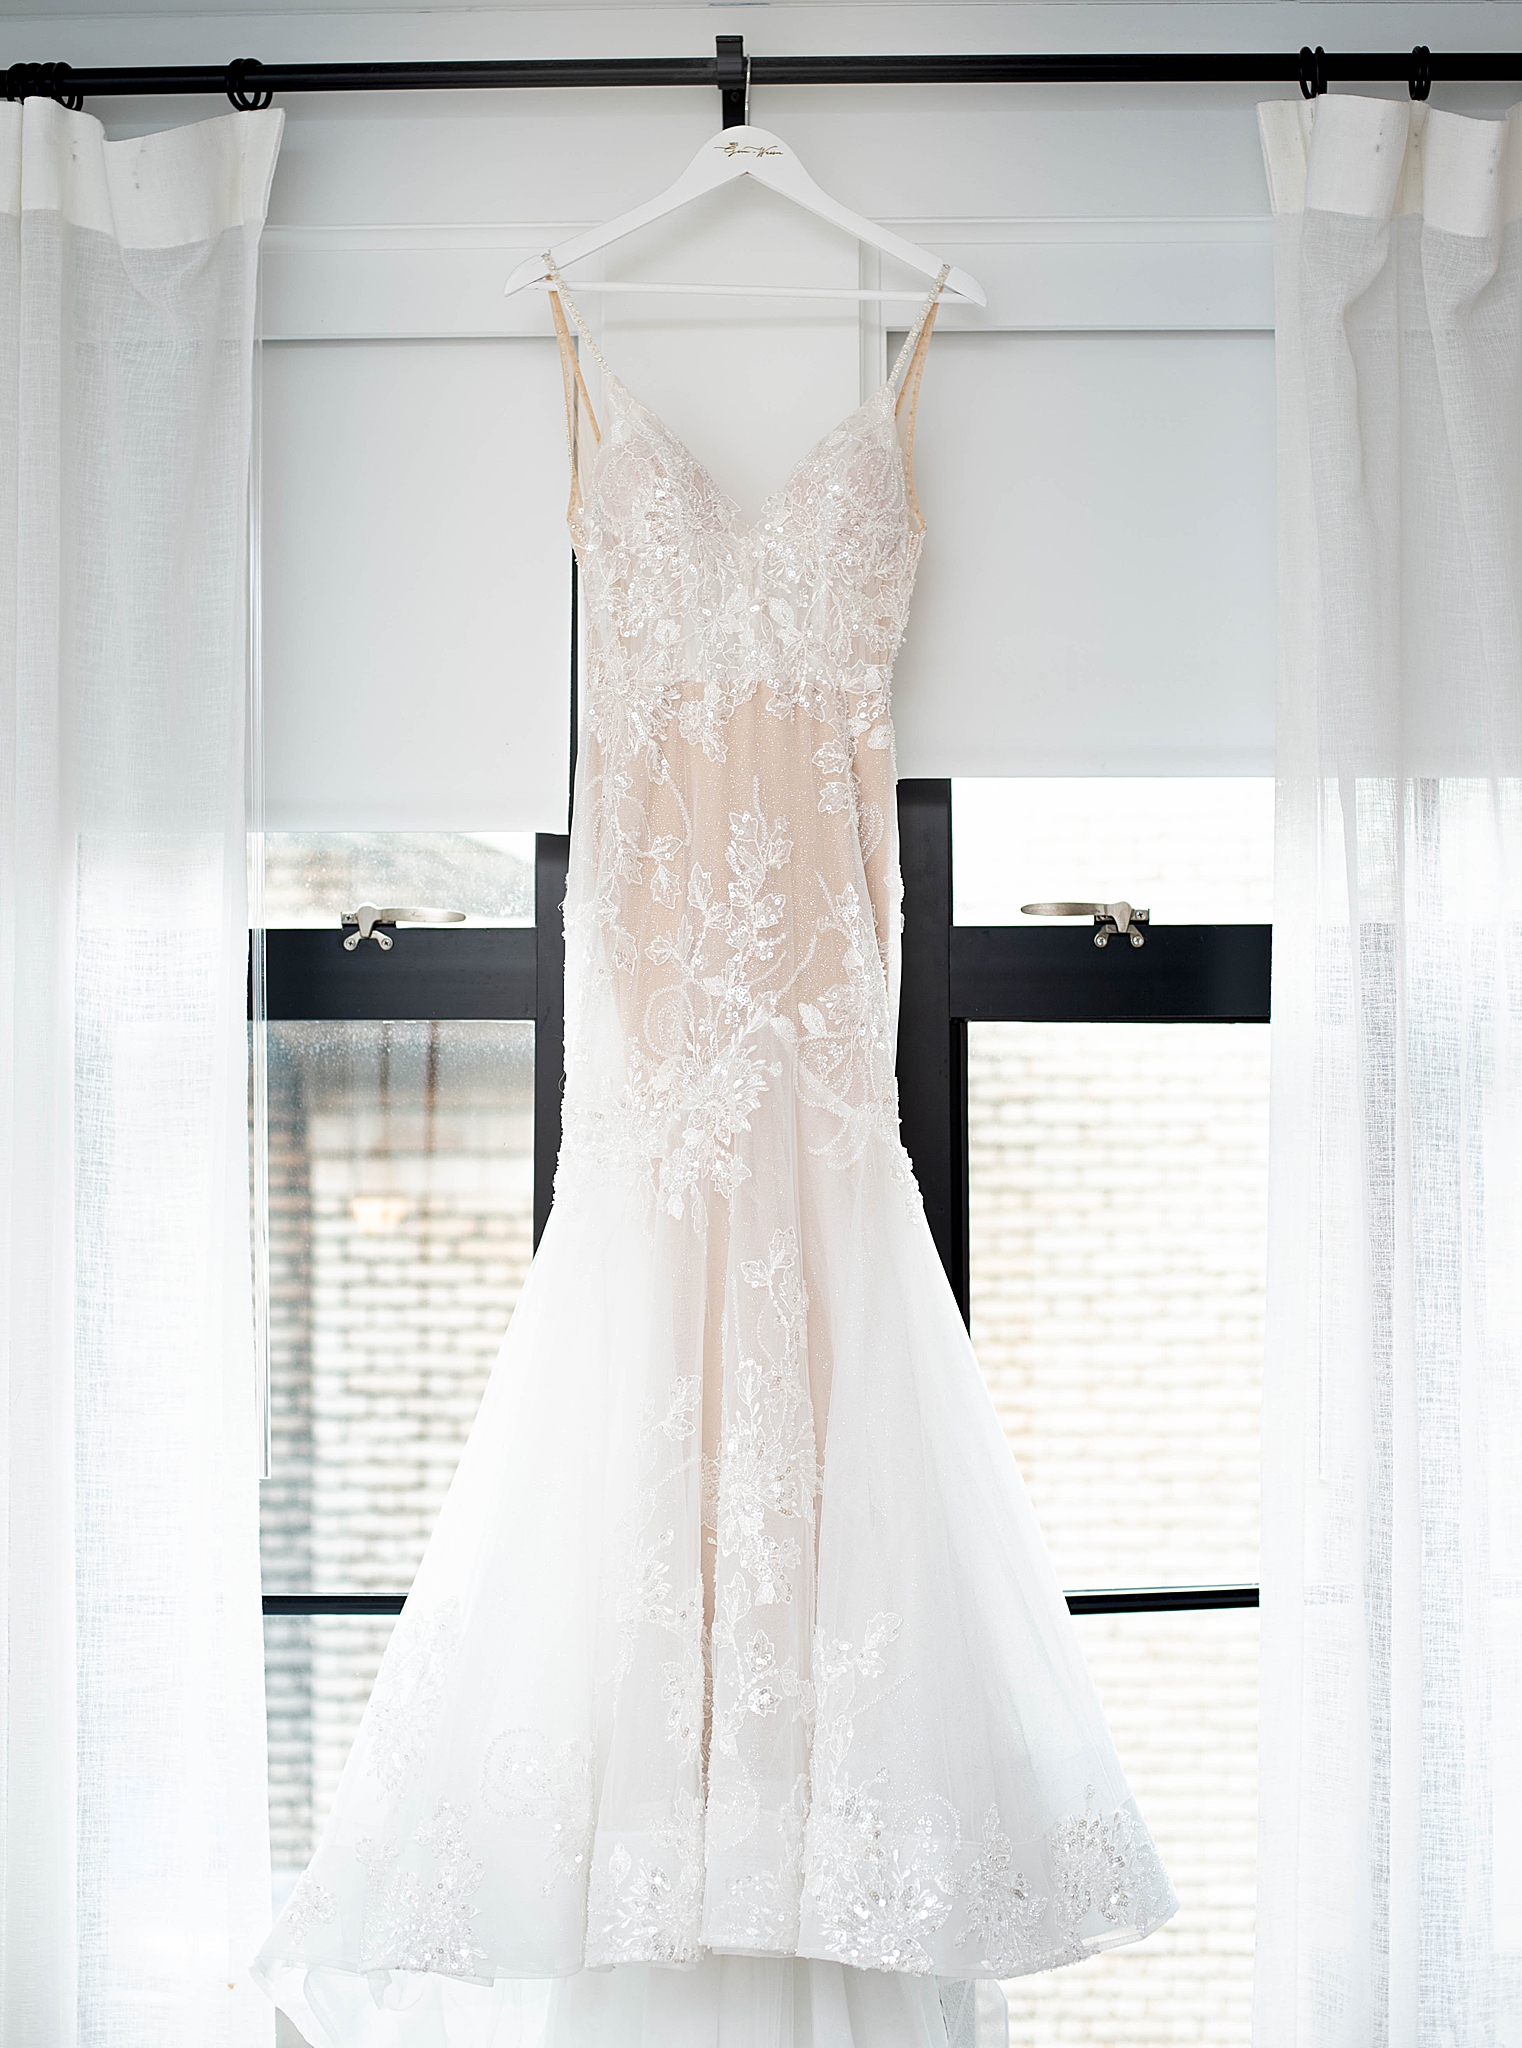 bride's dress hangs in Washington DC window